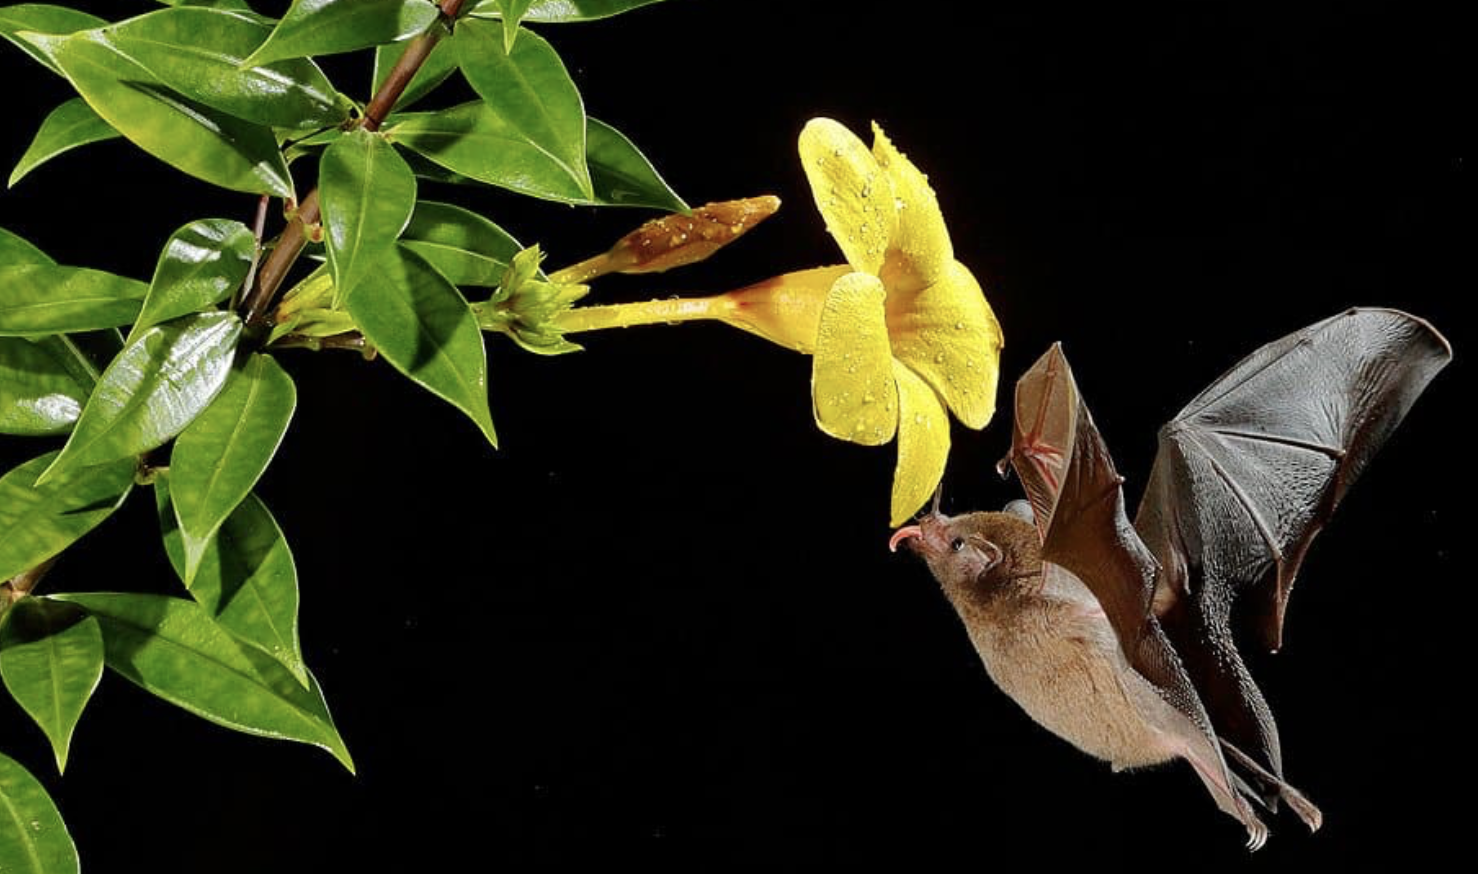 Encourage bats to your garden